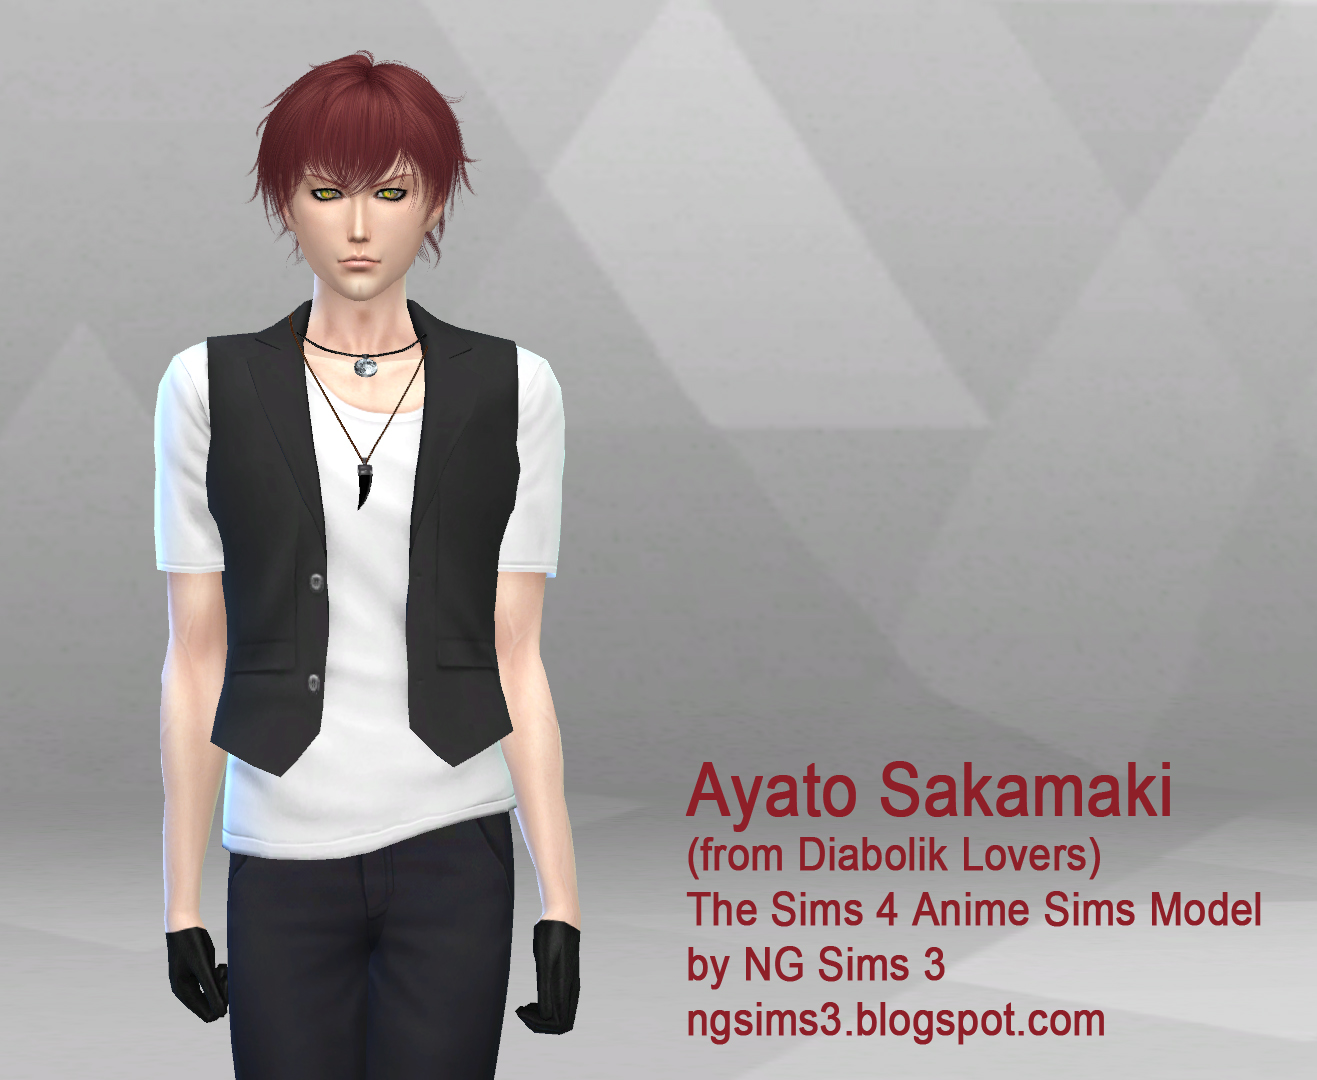 NG Sims 3: Ayato Sakamaki - TS4 Sims